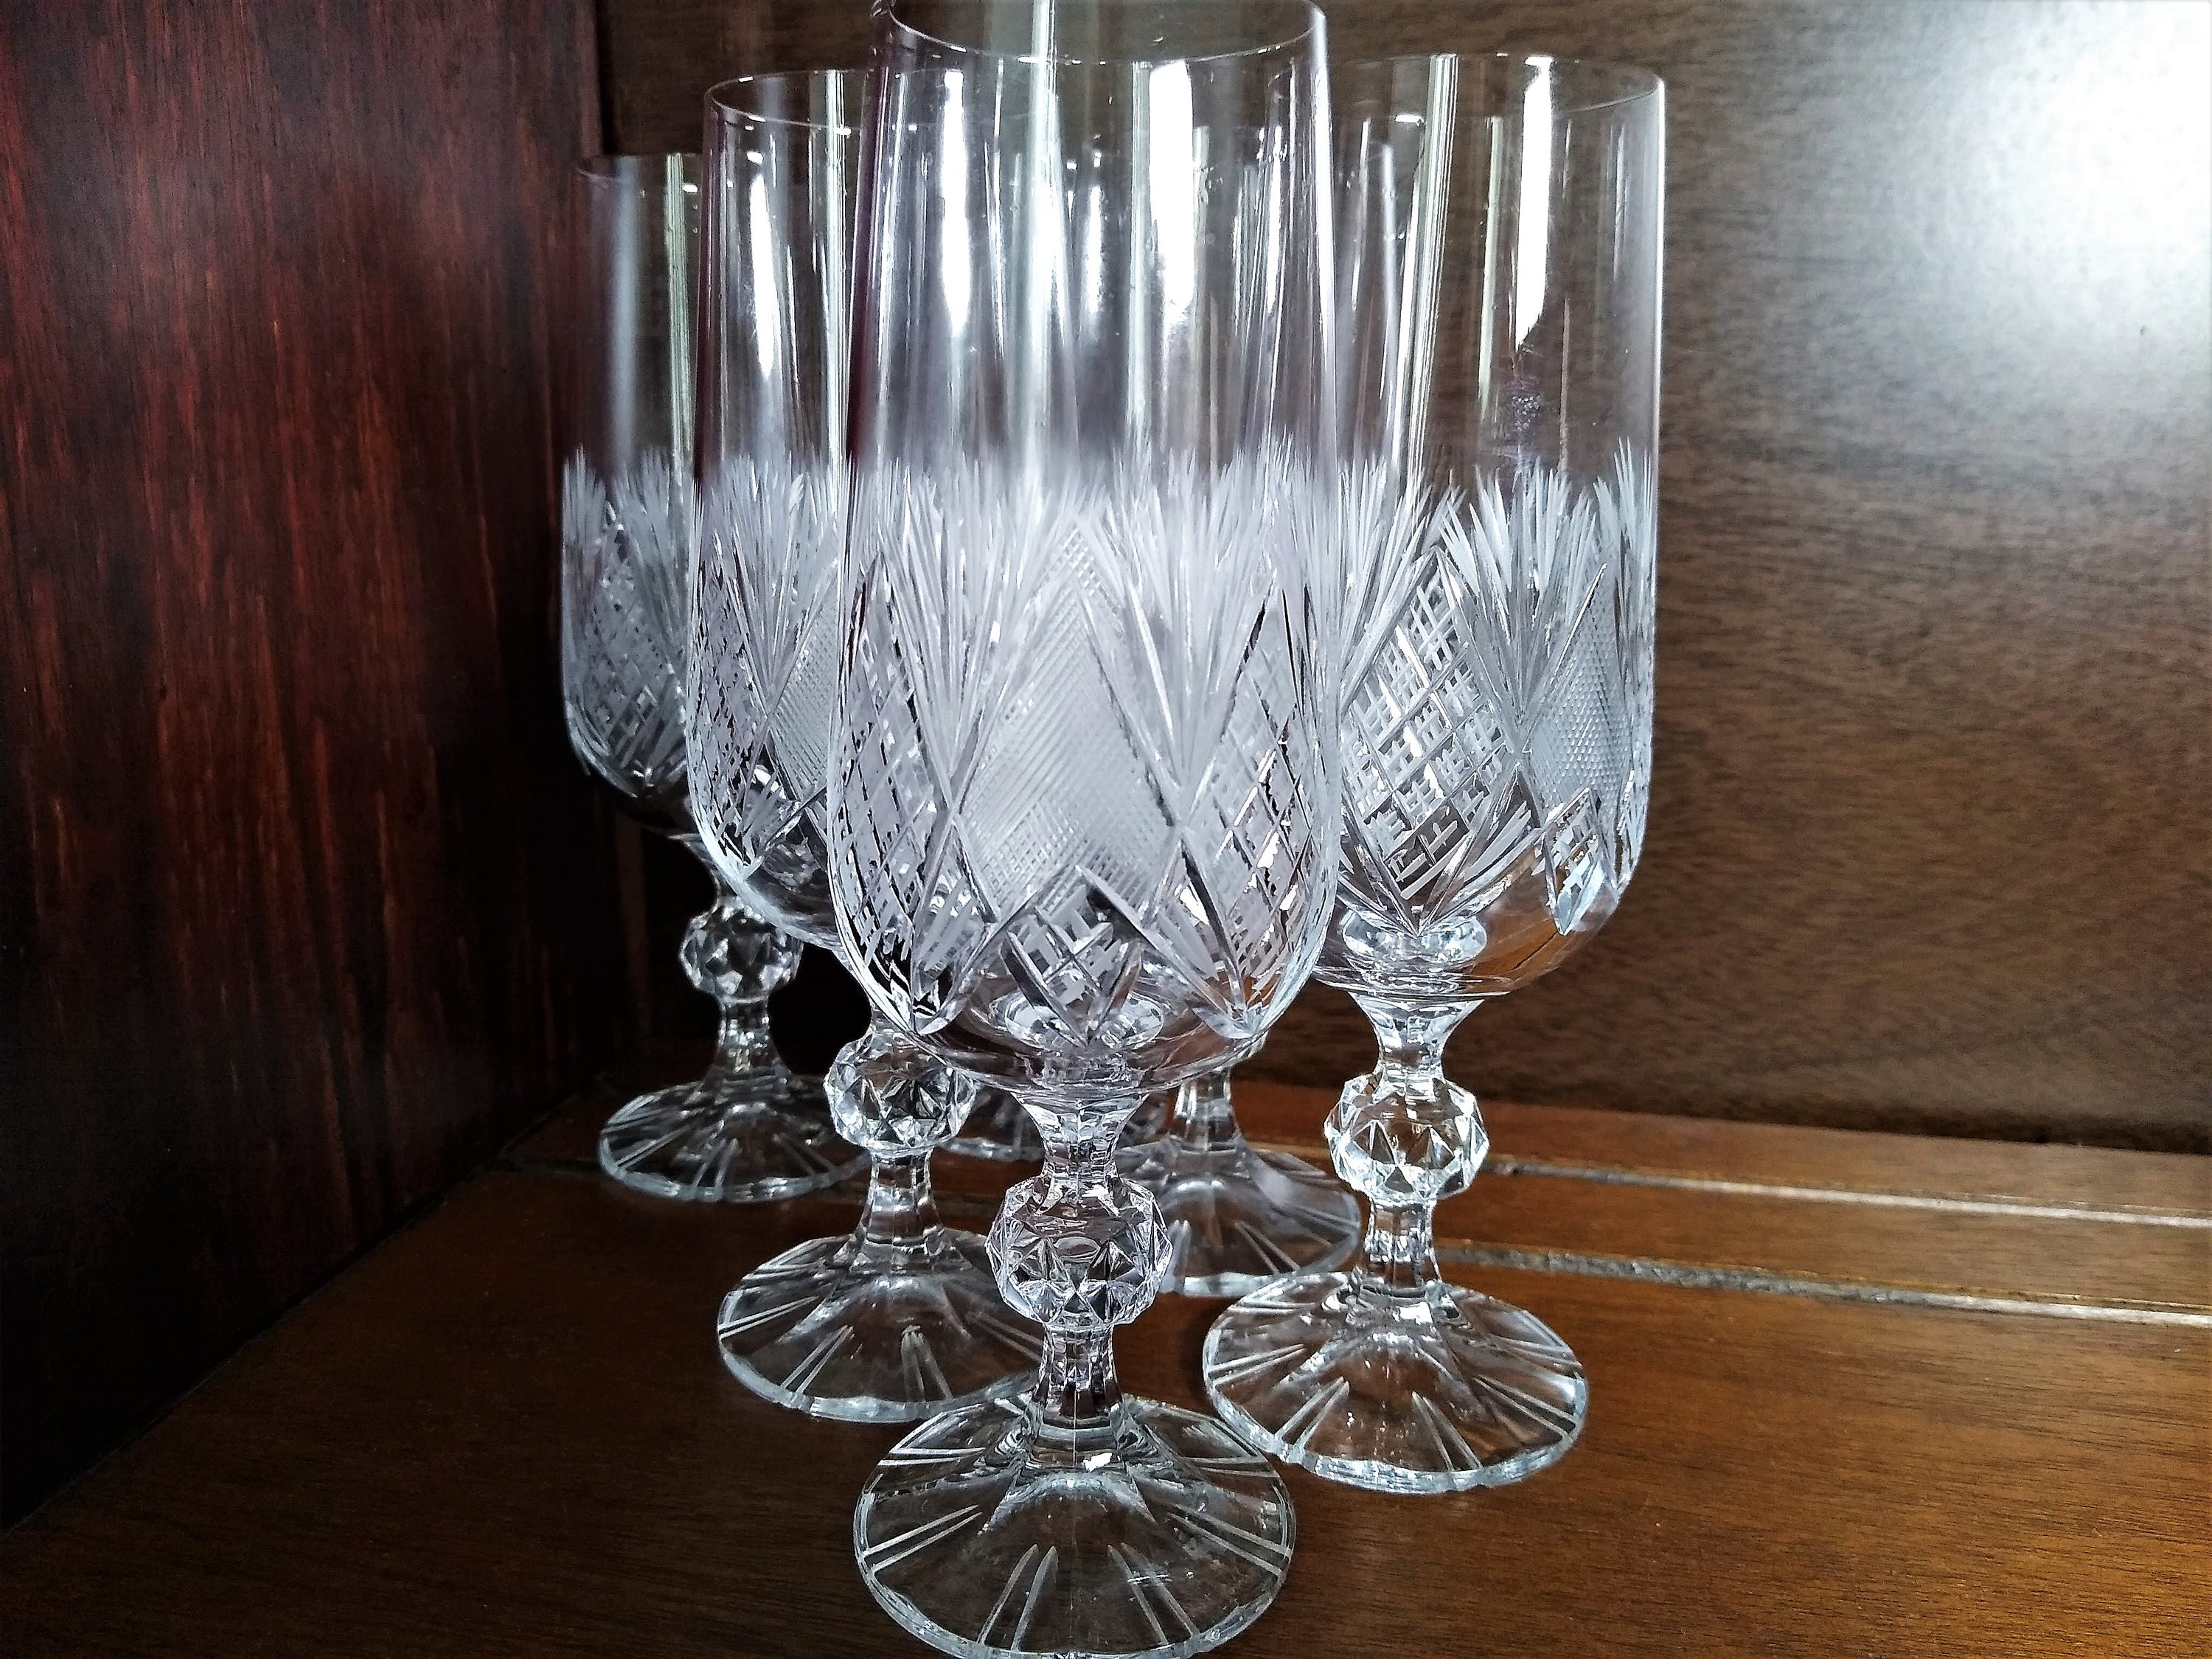 Eight Vintage Lead Crystal Footed Wine Glasses, Diamond and Ribs